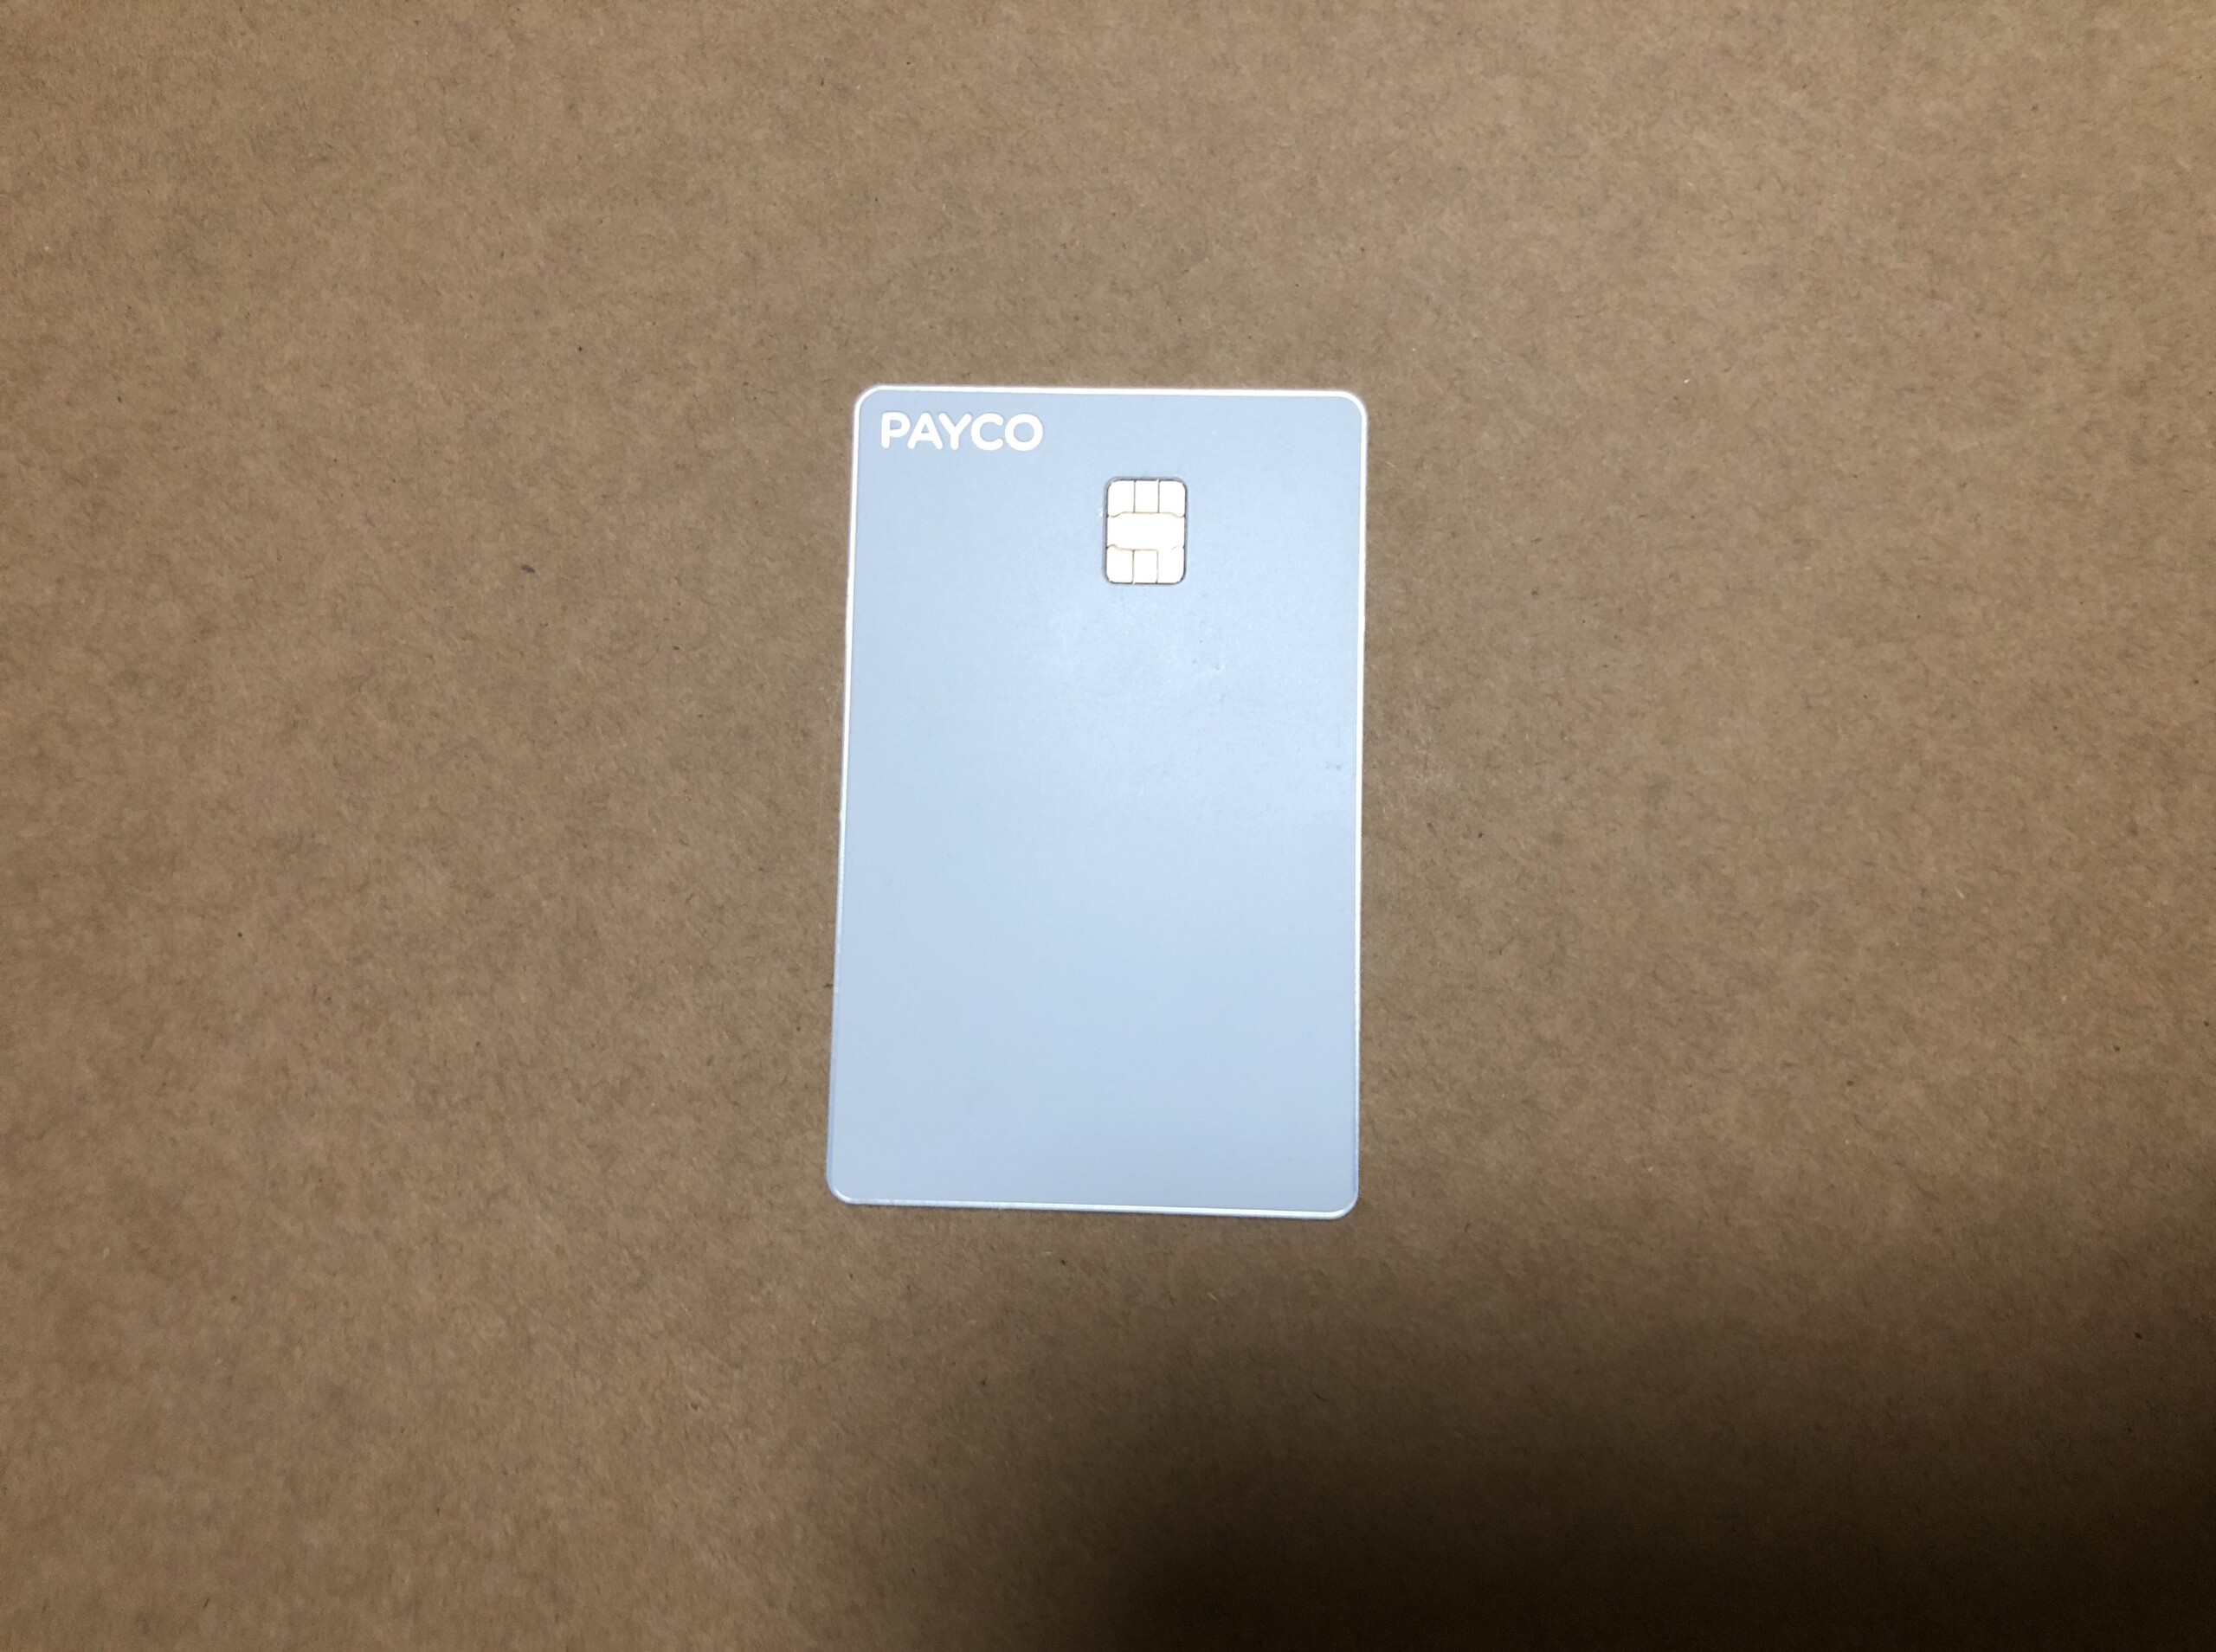 페이코 포인트카드 발급하고 1만원 받기(연회비, 전월실적 없음)